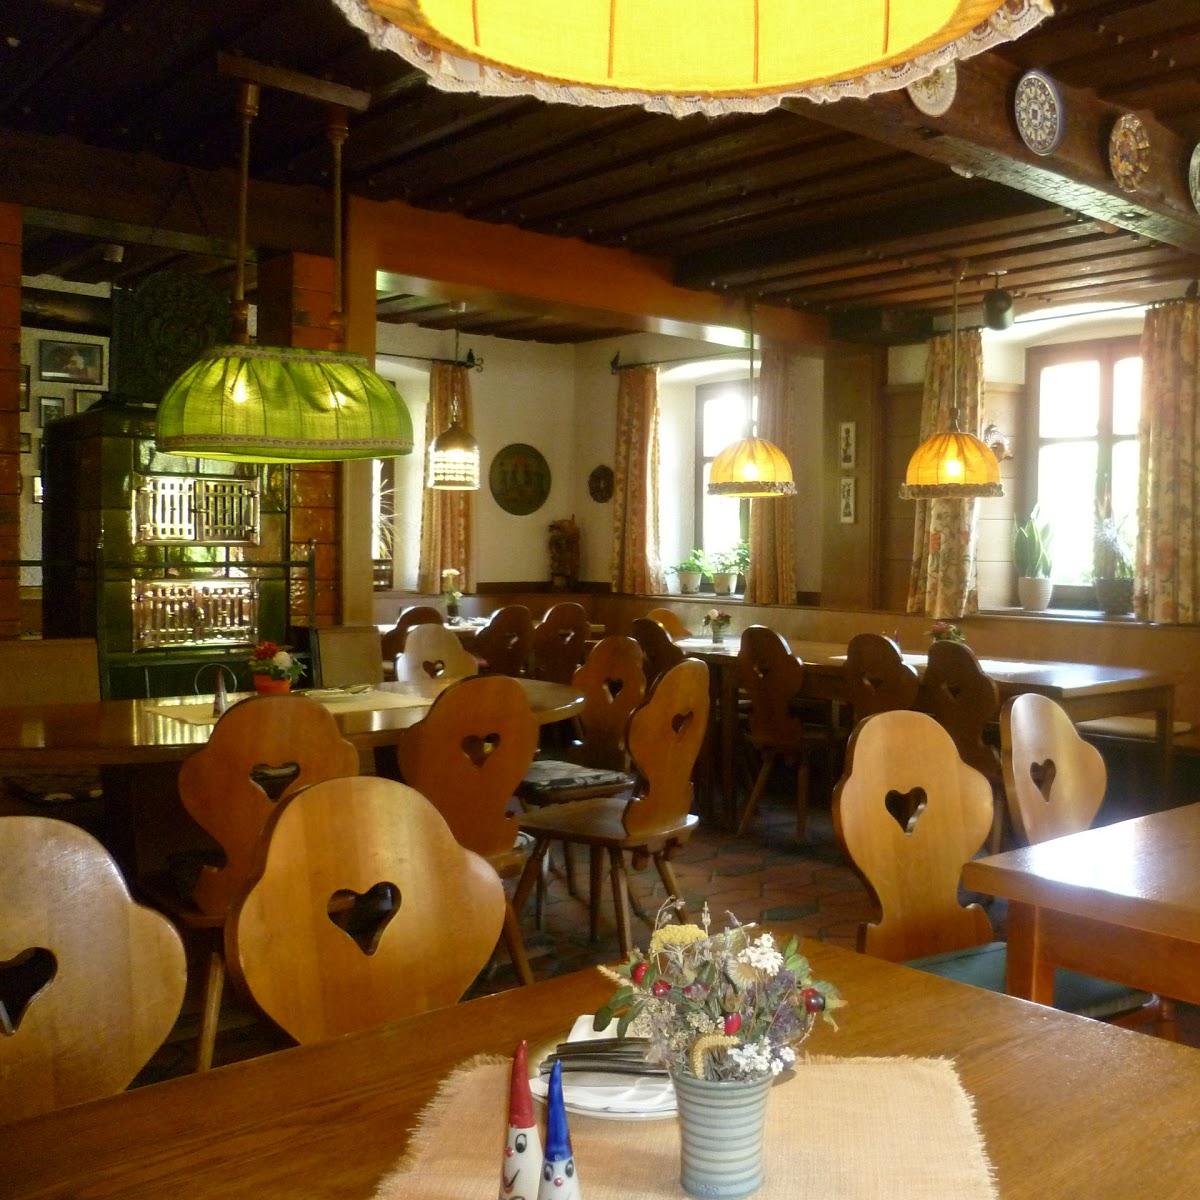 Restaurant "Brauerei Sauer" in Strullendorf